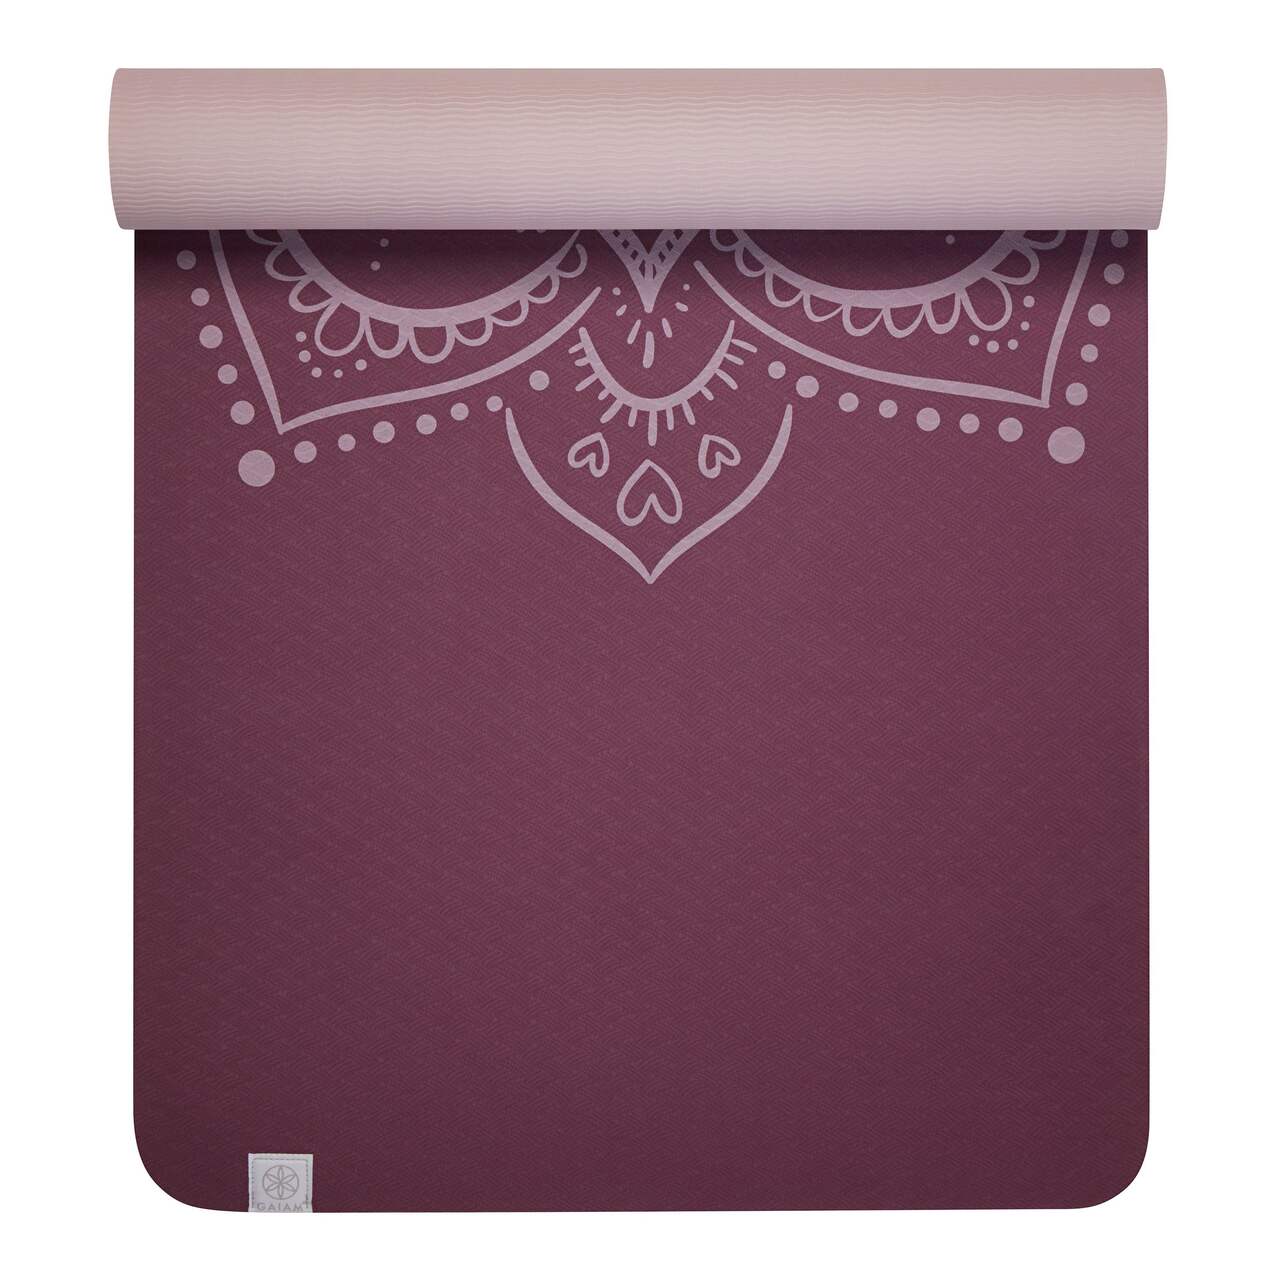 Gaiam Printed Fashion Yoga Block, Made from Sturdy Foam, Pink 